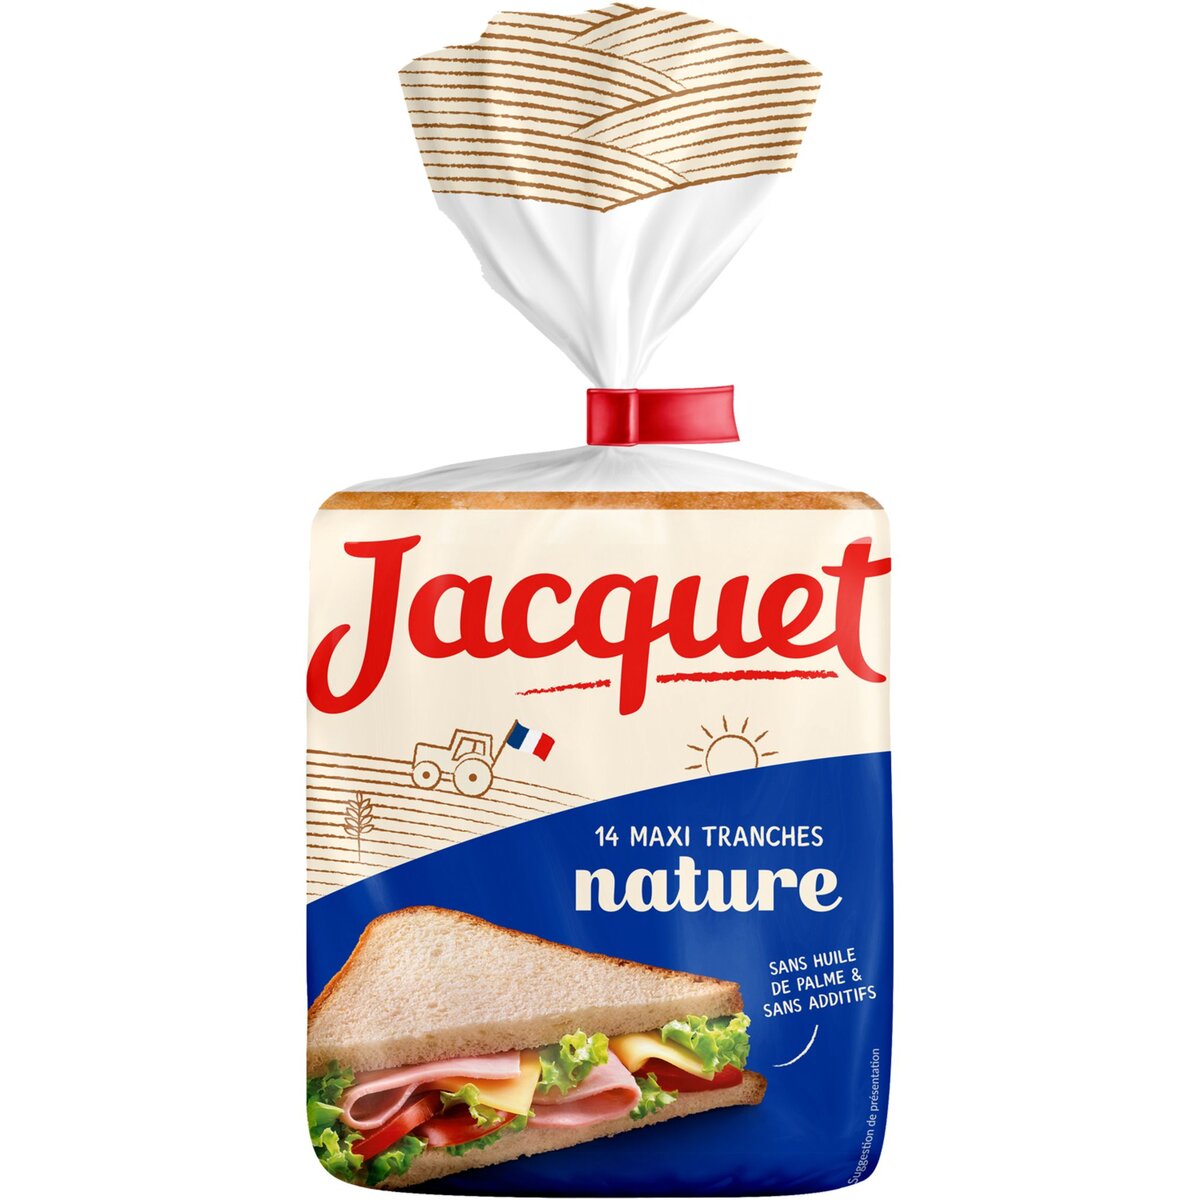 JACQUET Jacquet Maxi Jac' Pain de mie nature sans huile de palme 20 tranches 550g 14 tranches 550g